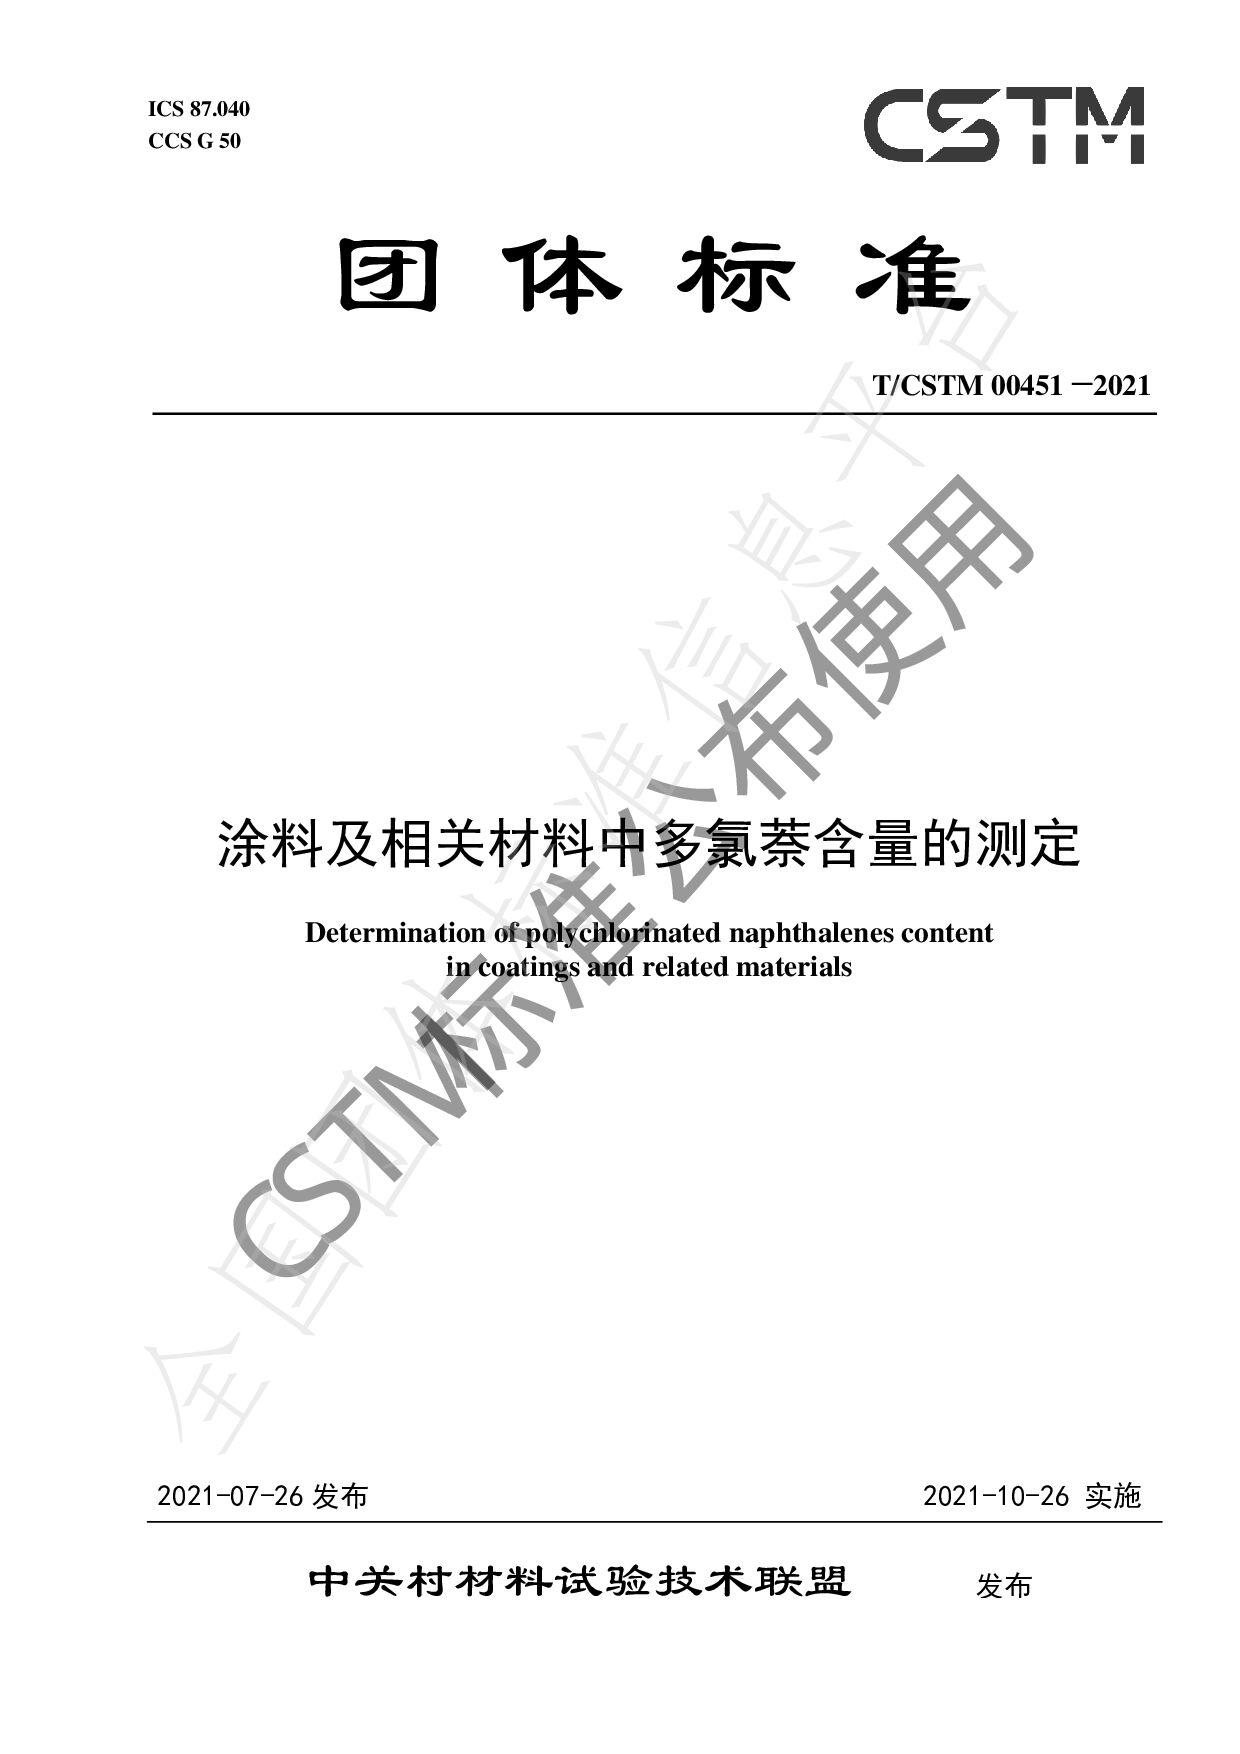 T/CSTM 00451—2021